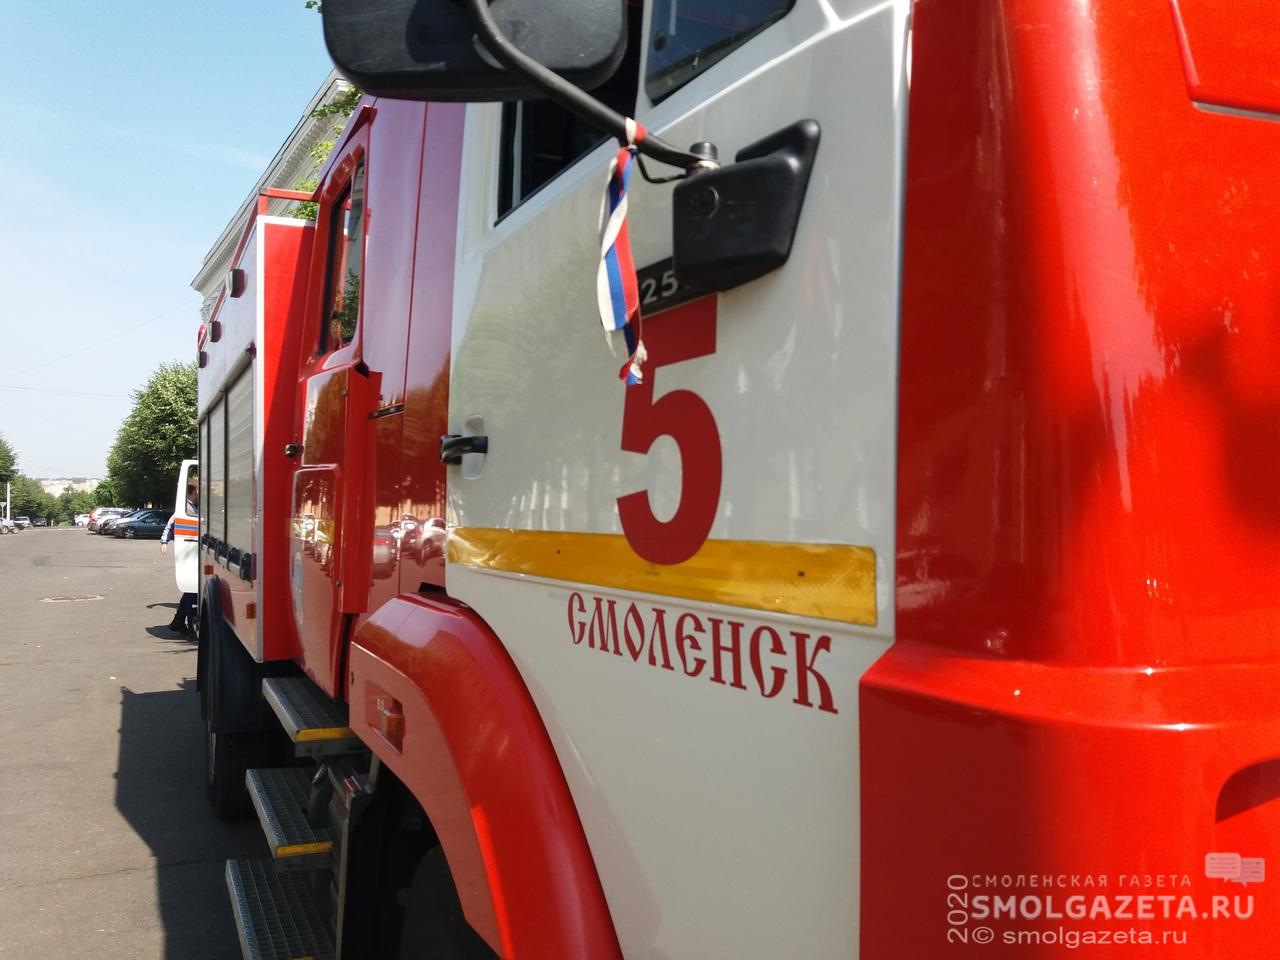 130 пожаров из-за неосторожности при сжигании мусора произошло в Смоленской области